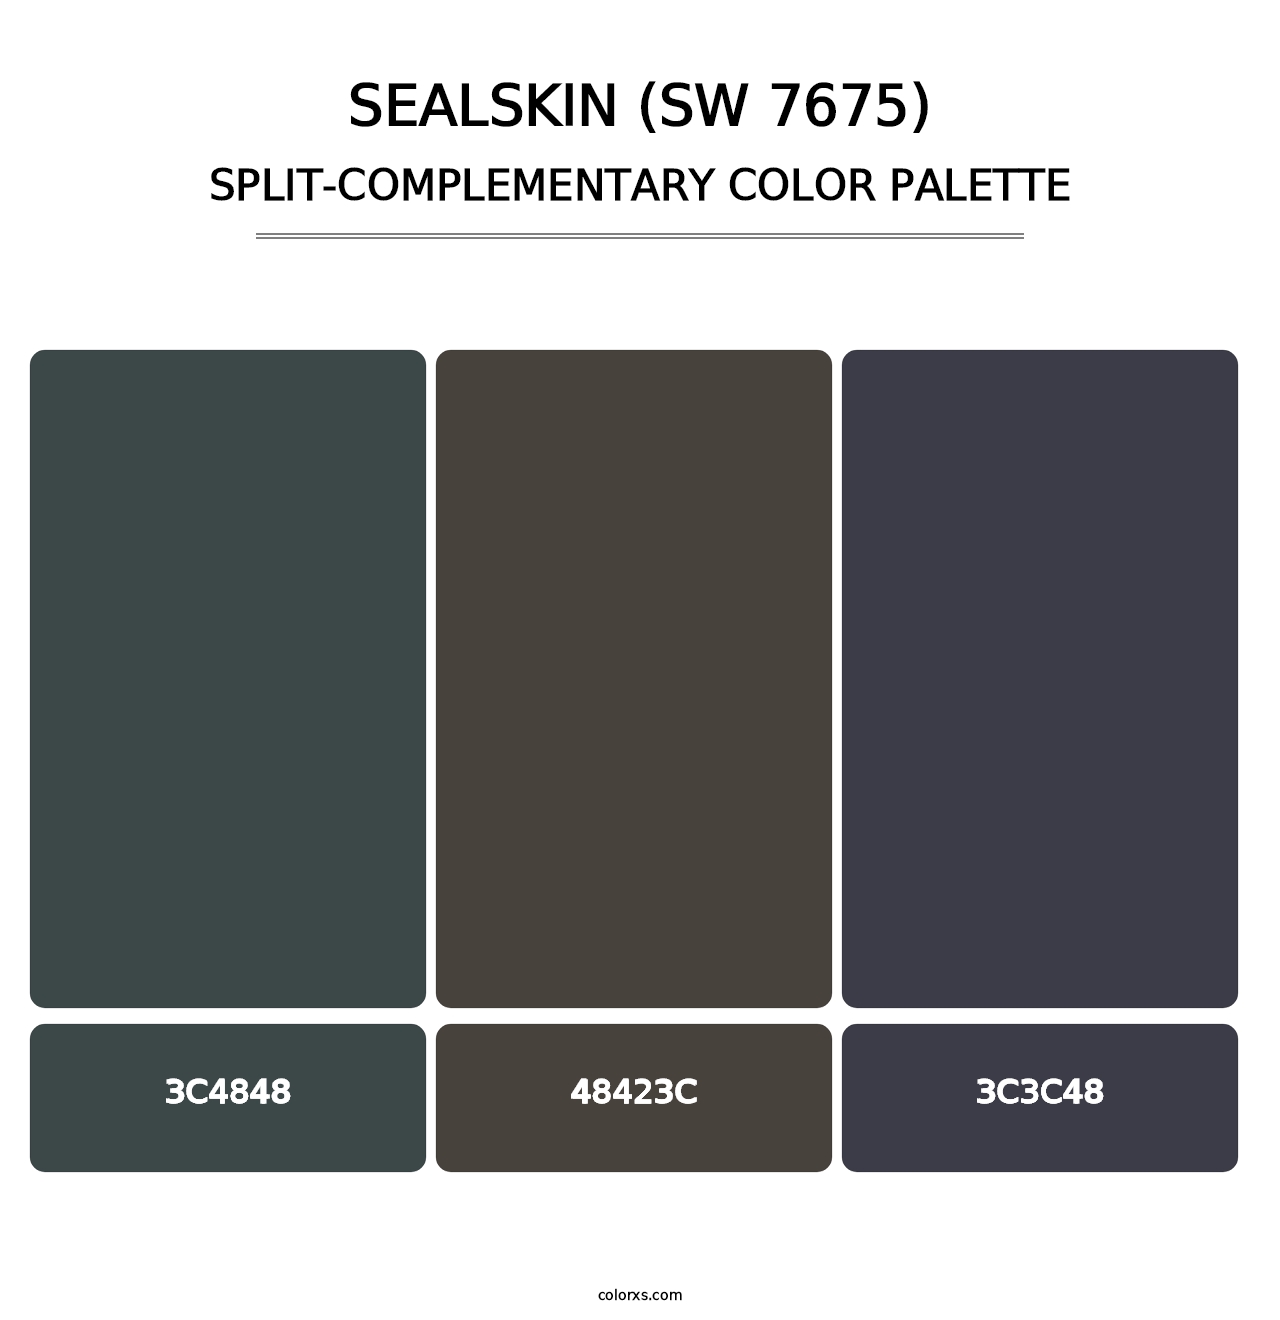 Sealskin (SW 7675) - Split-Complementary Color Palette